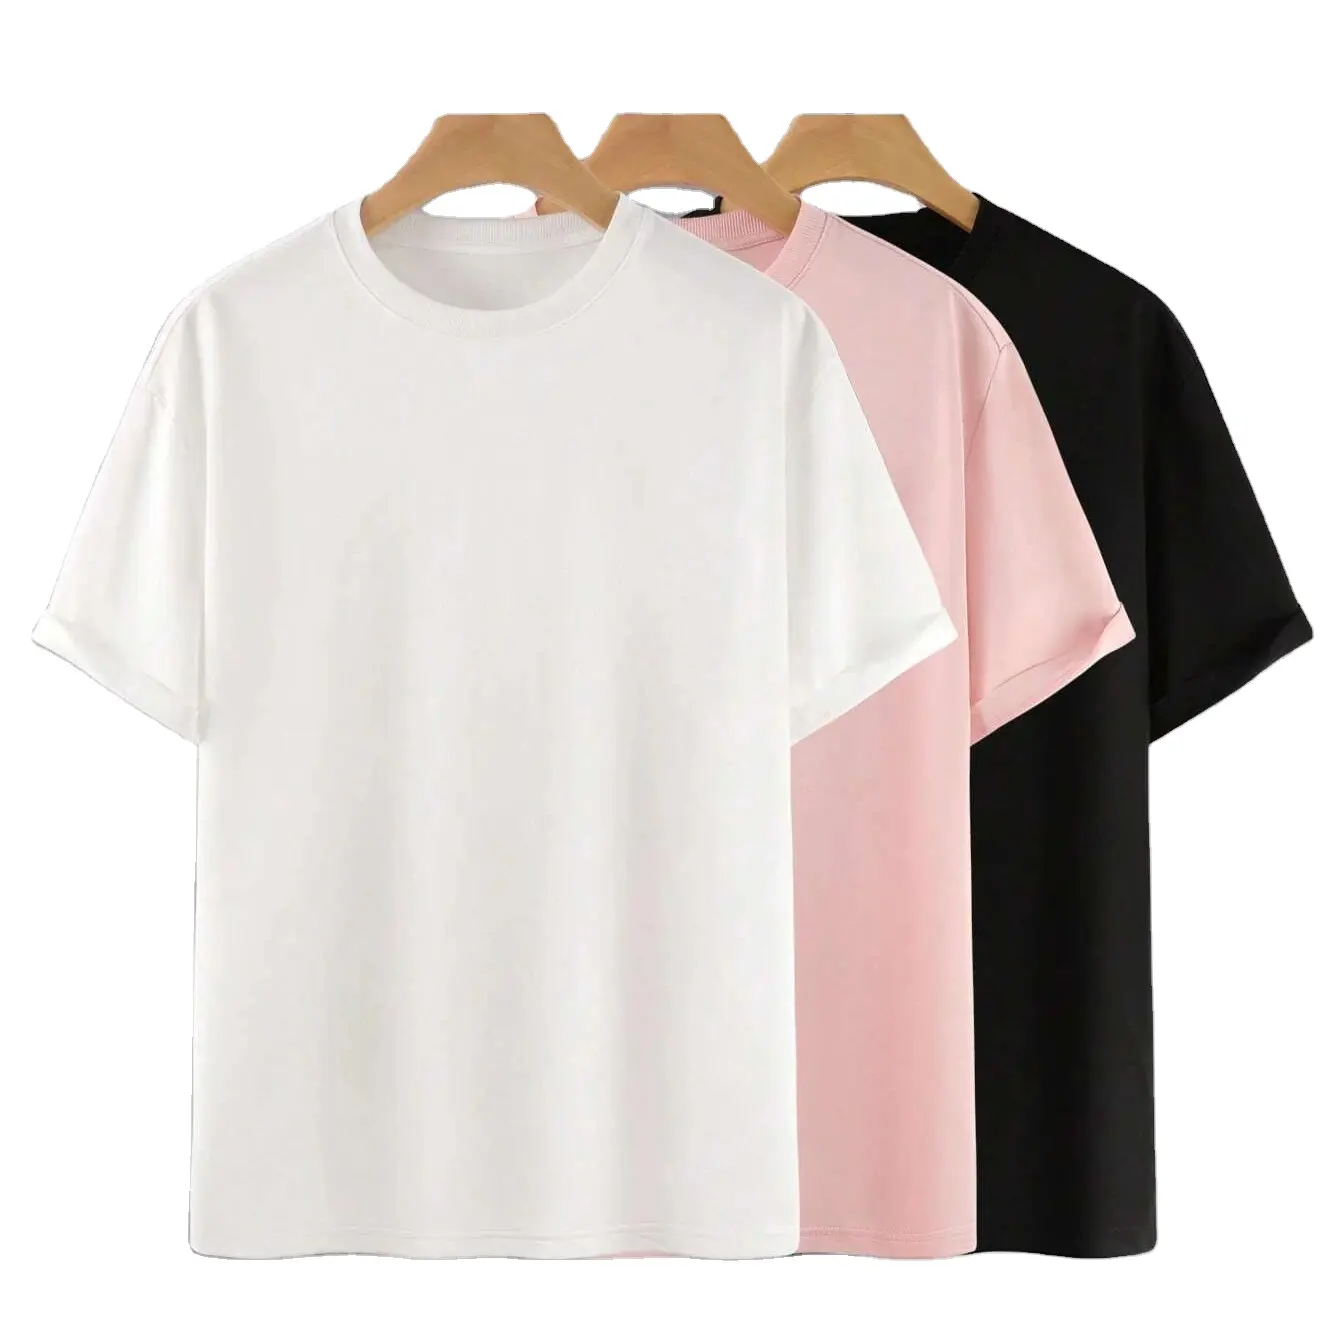 Kaus pria leher bulat polos, 3 potong t-shirt Slim Fit kualitas terbaik/kaus pria kualitas terbaik dalam pakaian kasual warna Solid